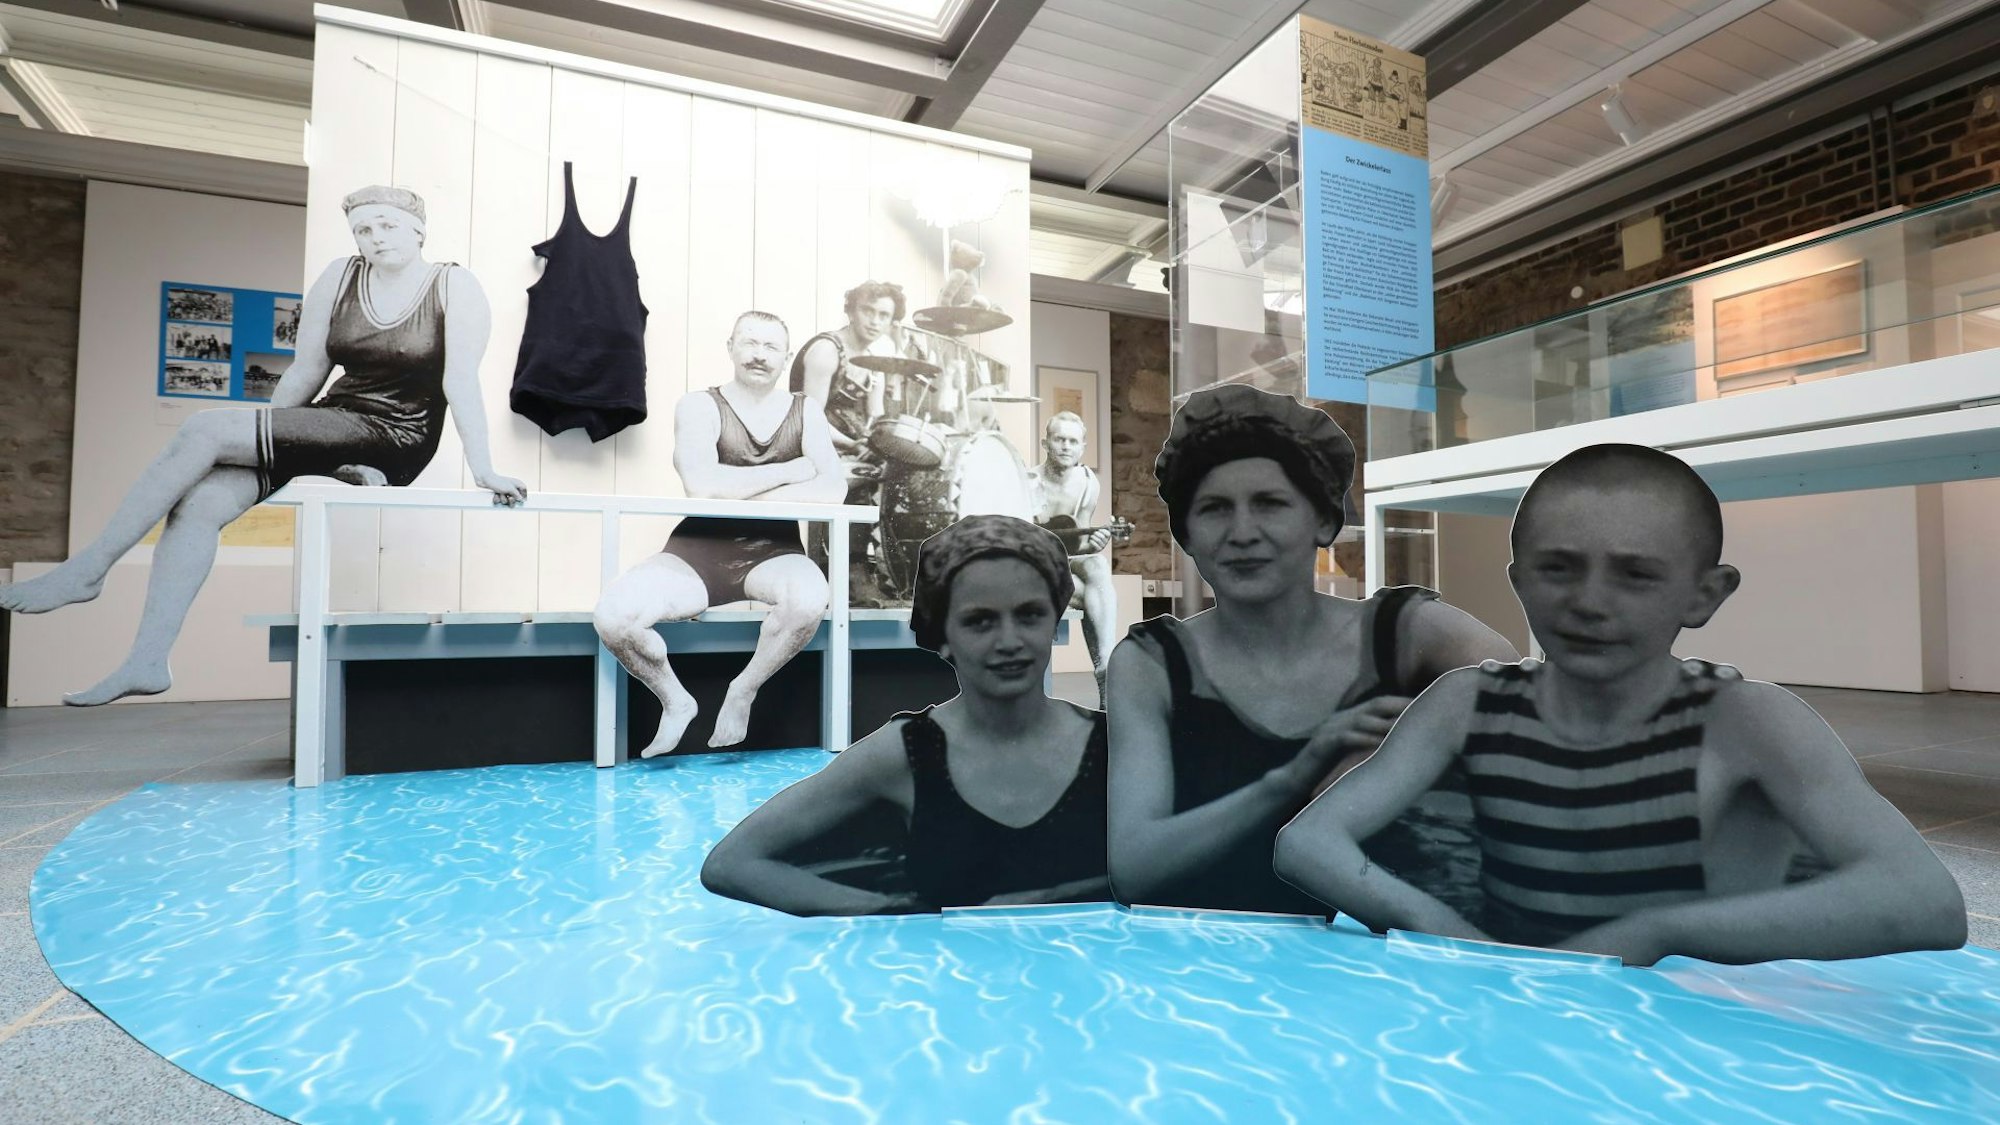 In der Ausstellung waren großformatig Bilder von Badegästen in den damals üblichen Badeanzügen zu sehen, die wohl Anfang des 20. Jahrhunderts entstanden sind.